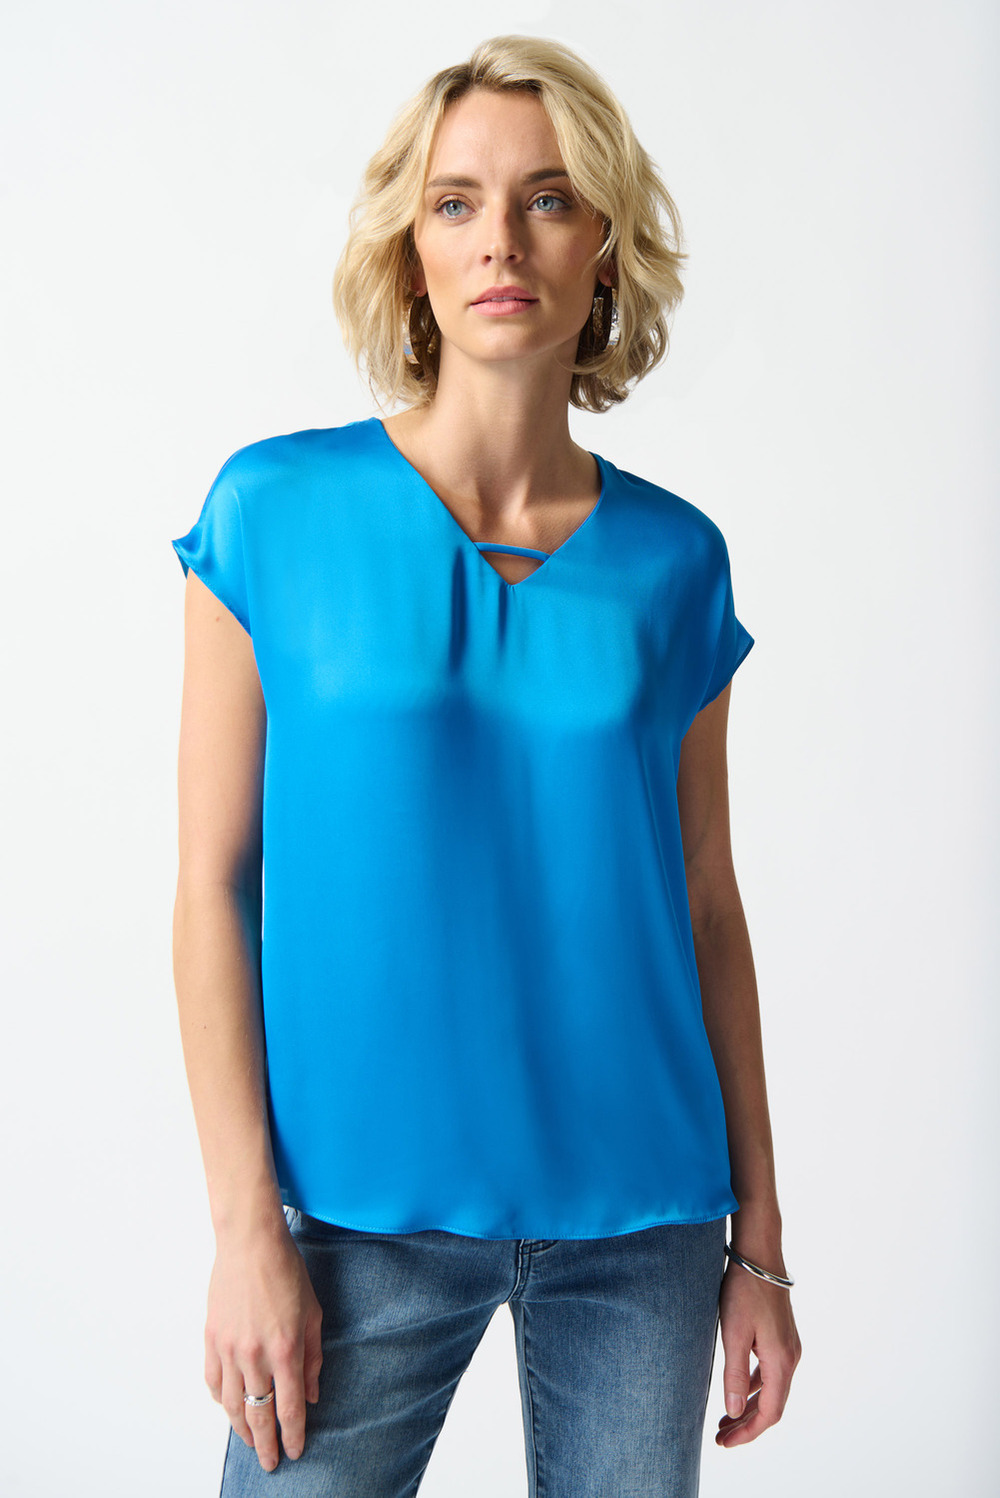 T-shirt satiné, col décoré modèle 242123. French Blue